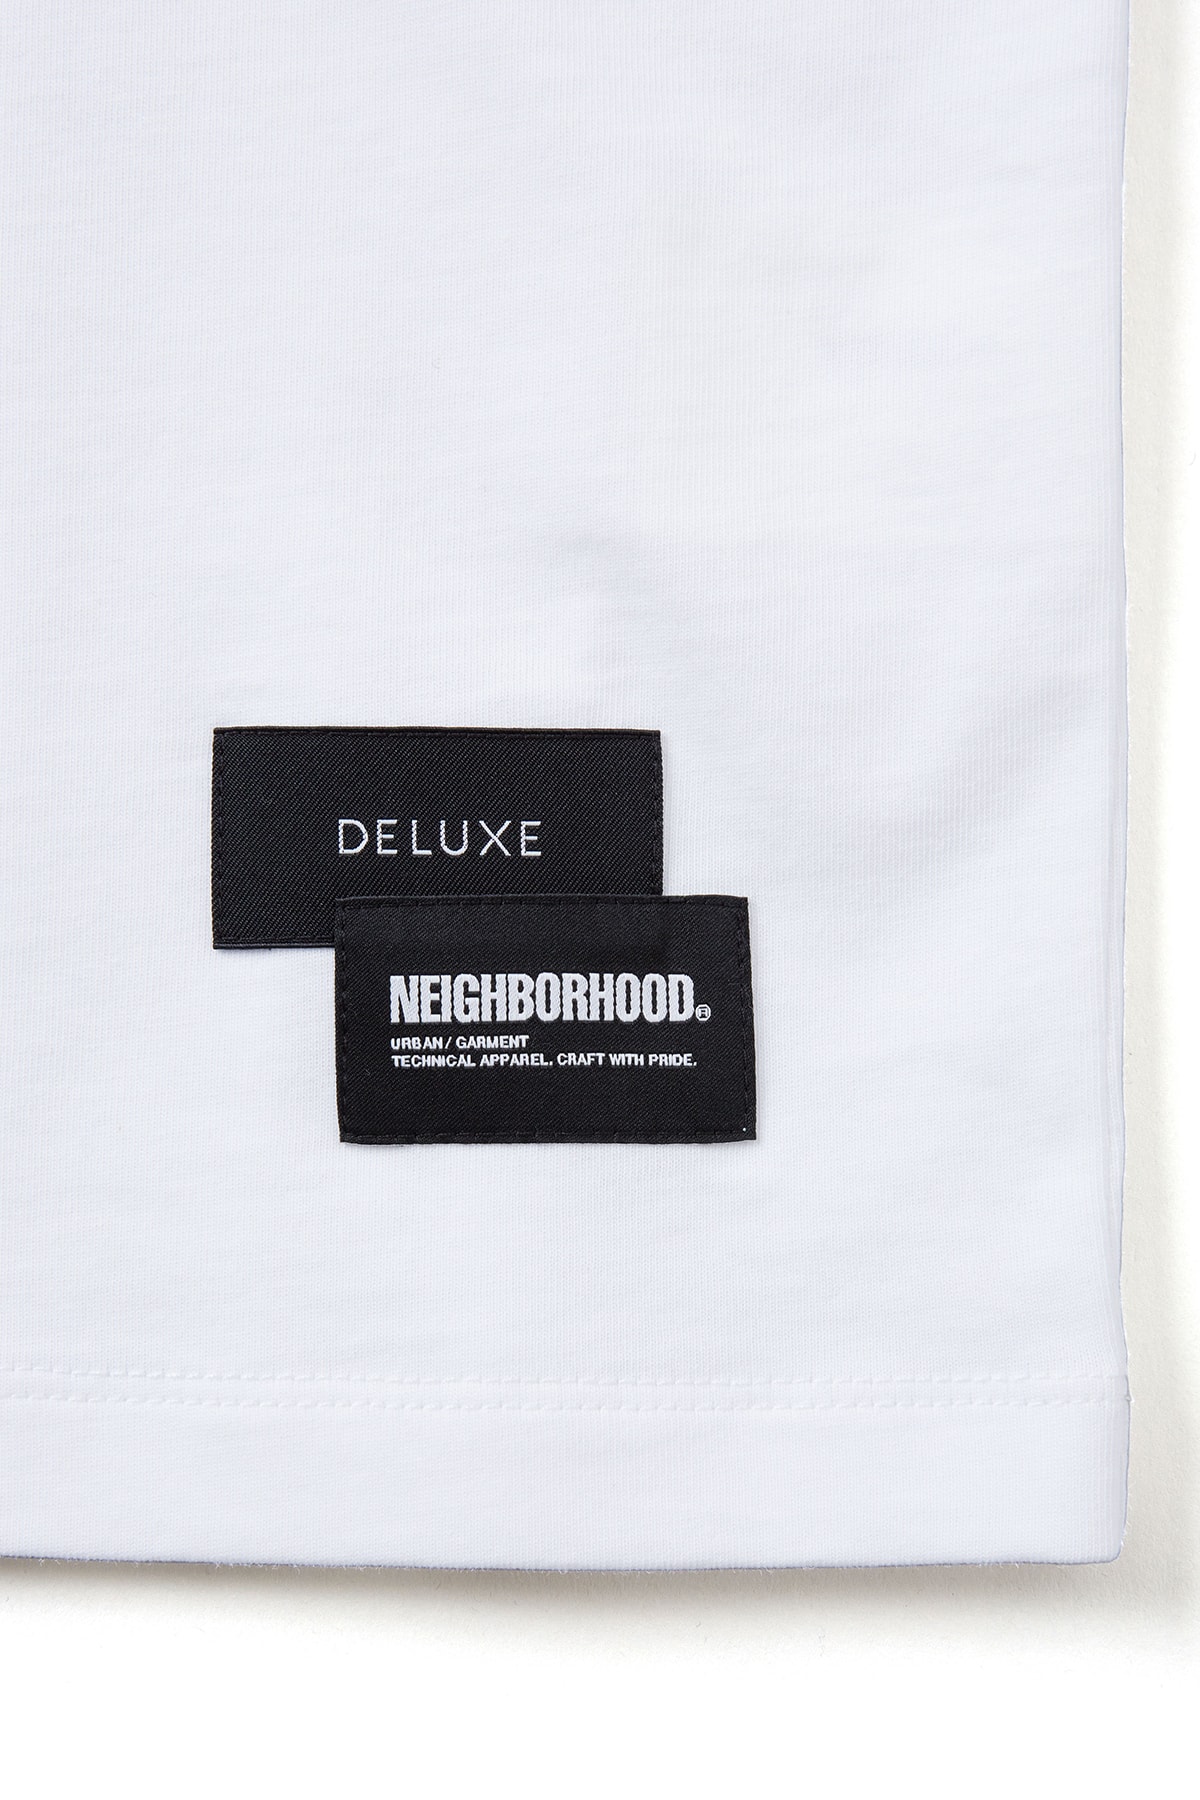 ネイバーフッド x デラックスによる初のコラボコレクションが発売 NEIGHBORHOOD x DELUXE first collab collection release info